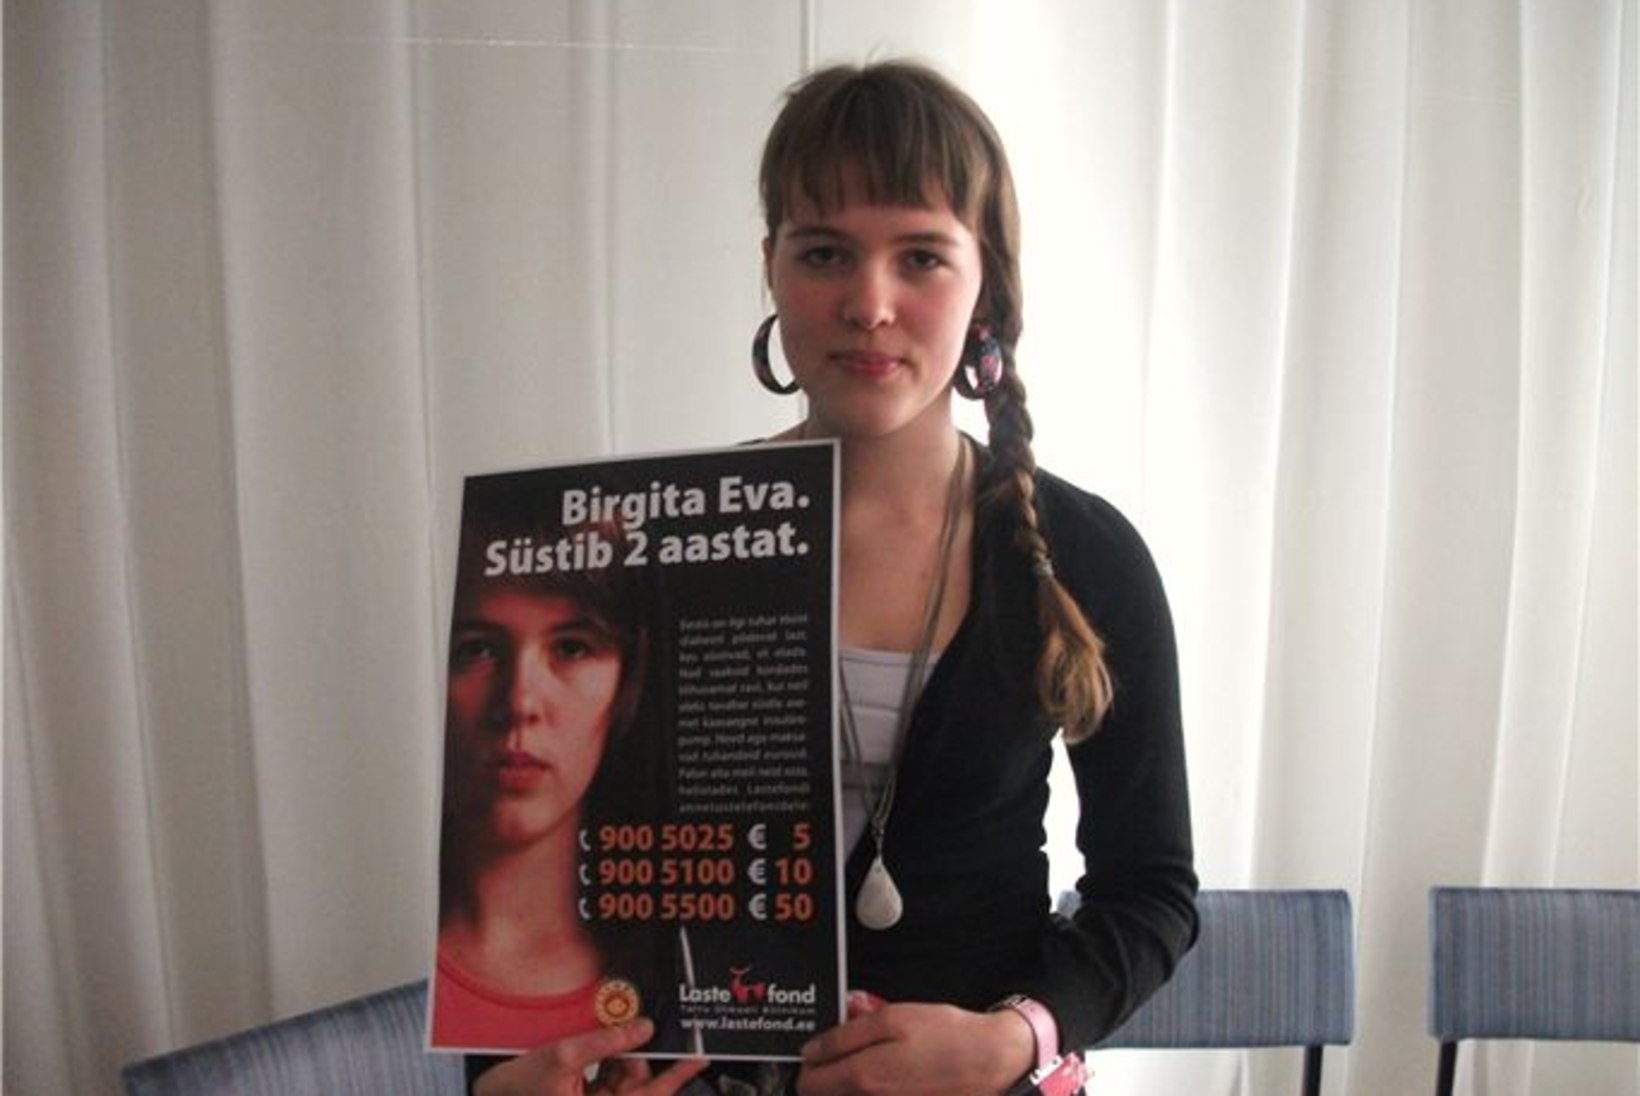 Lastefondilt abi saanud Birgita Eva: "Stressi on nüüd palju vähem!" 